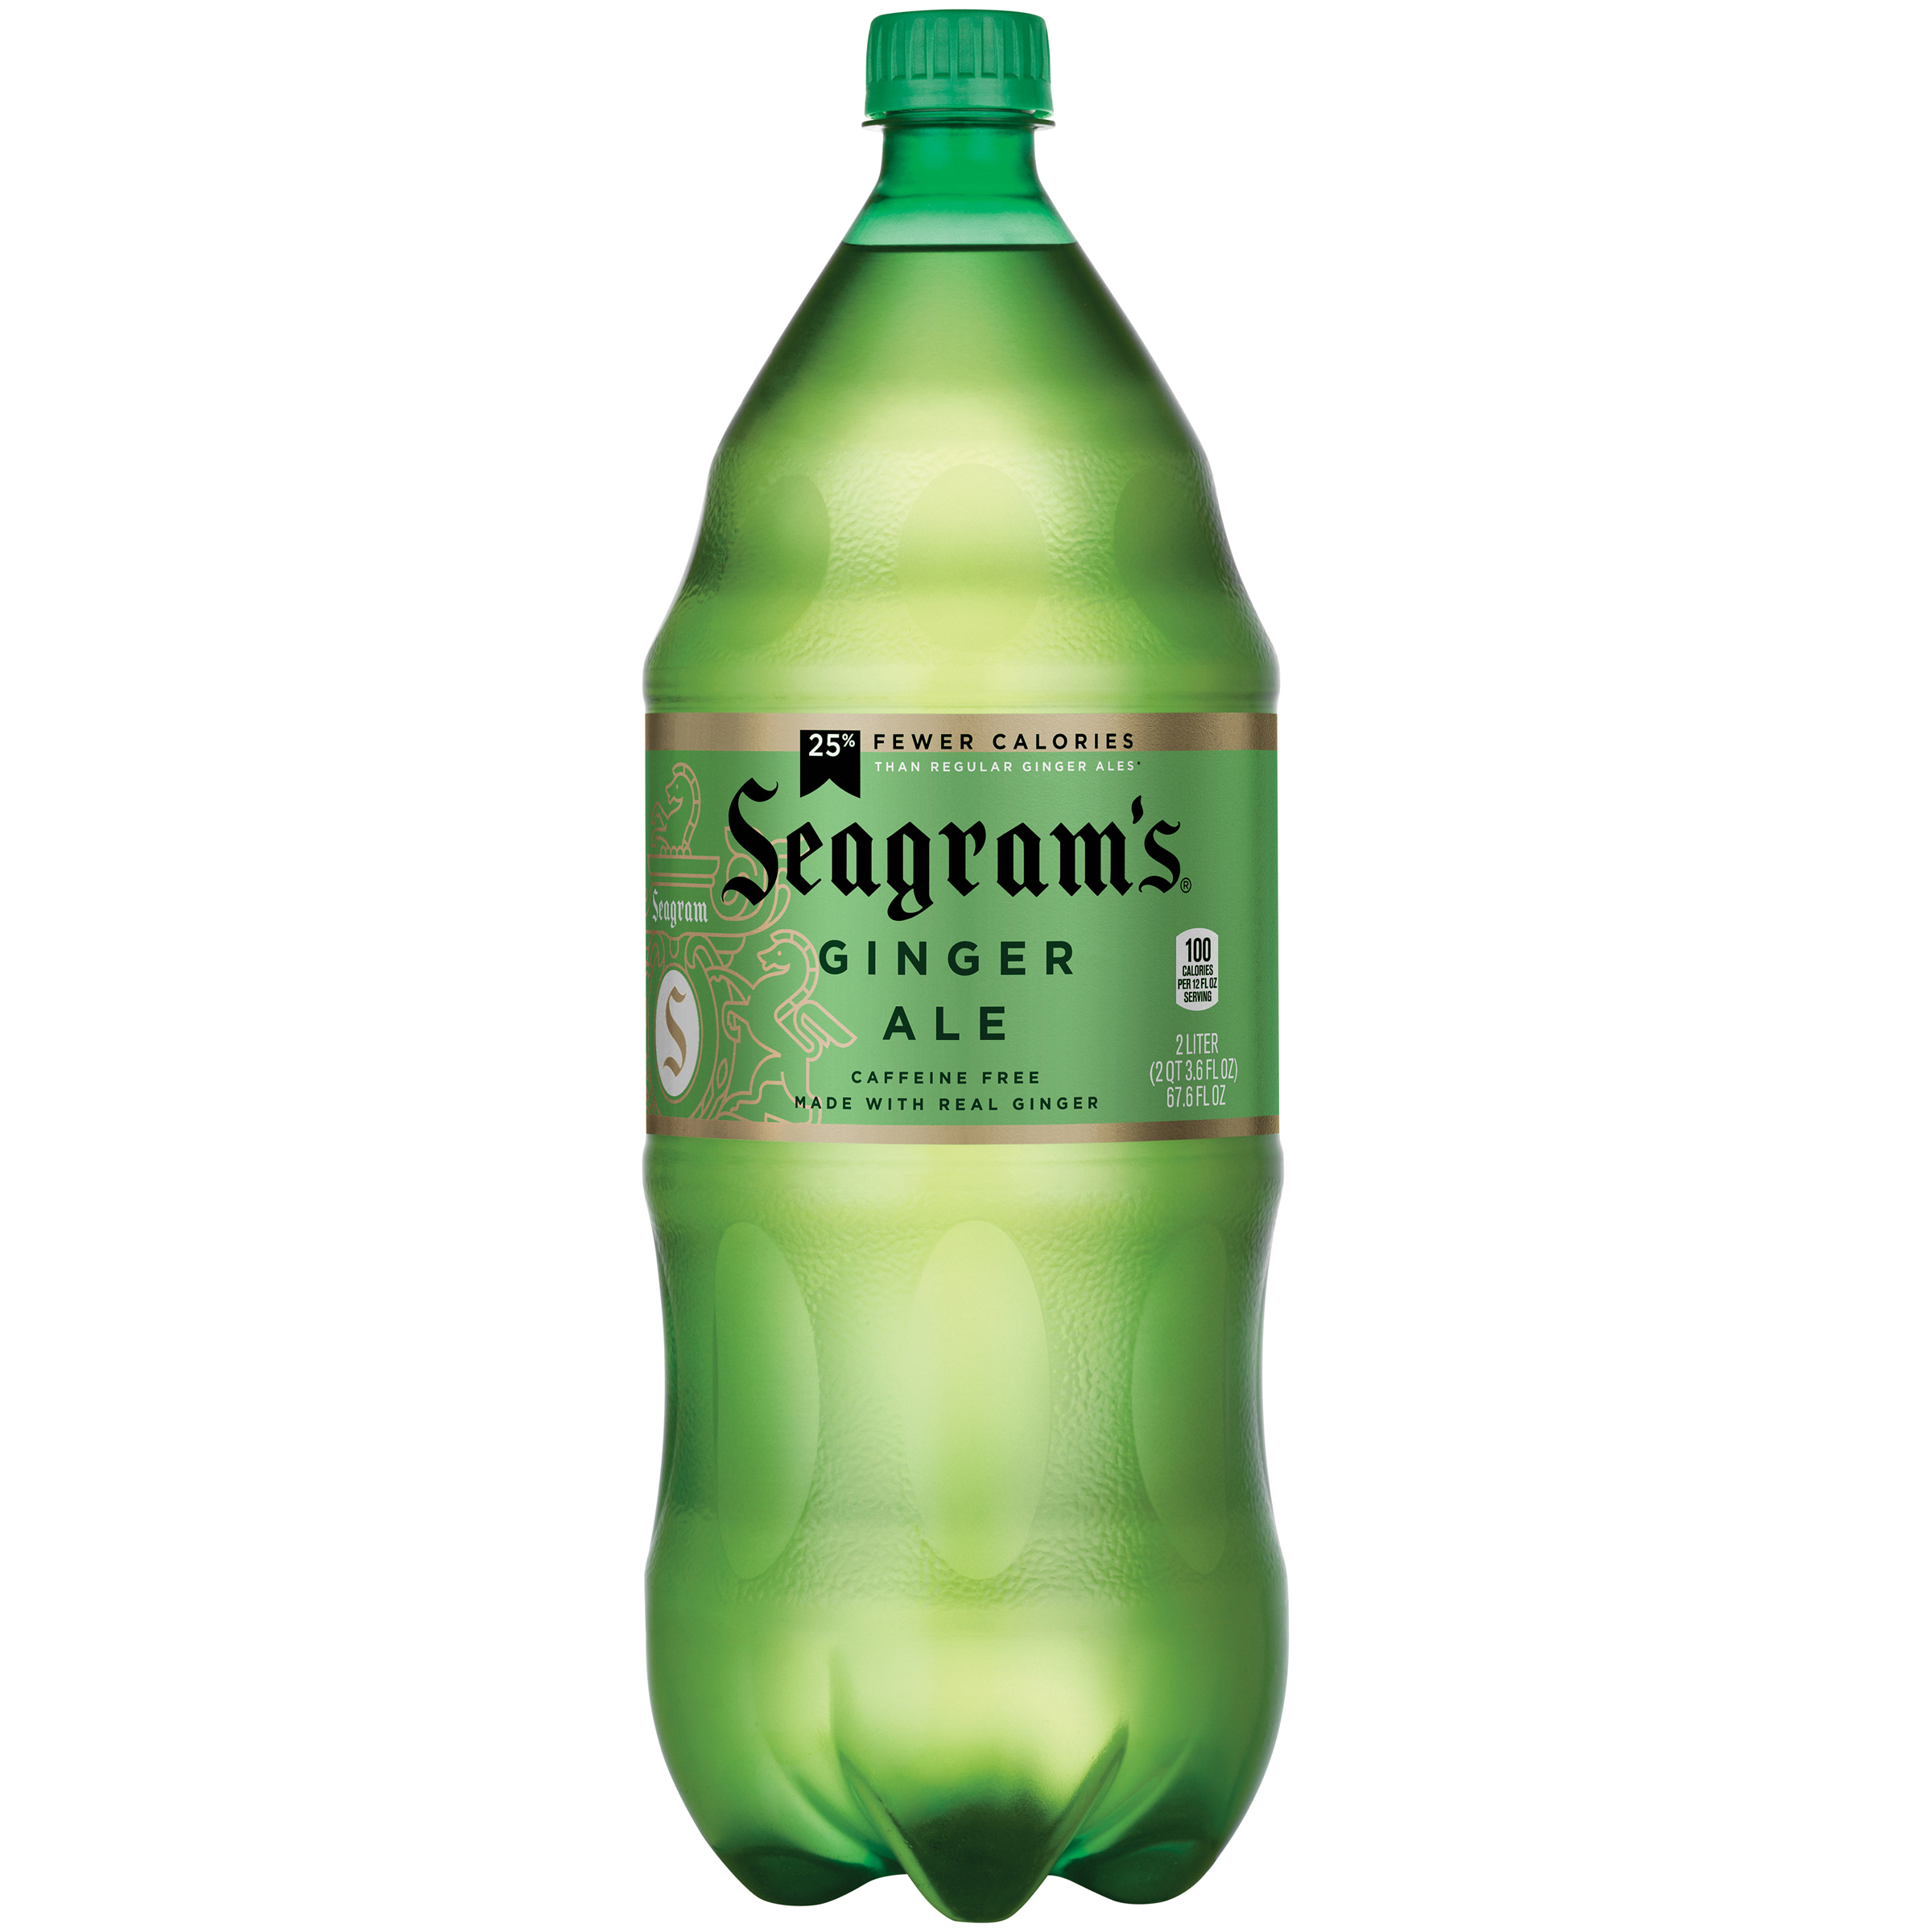 Seagrams Ginger Ale 2 lt   Food & Grocery   Beverages   Soda Pop